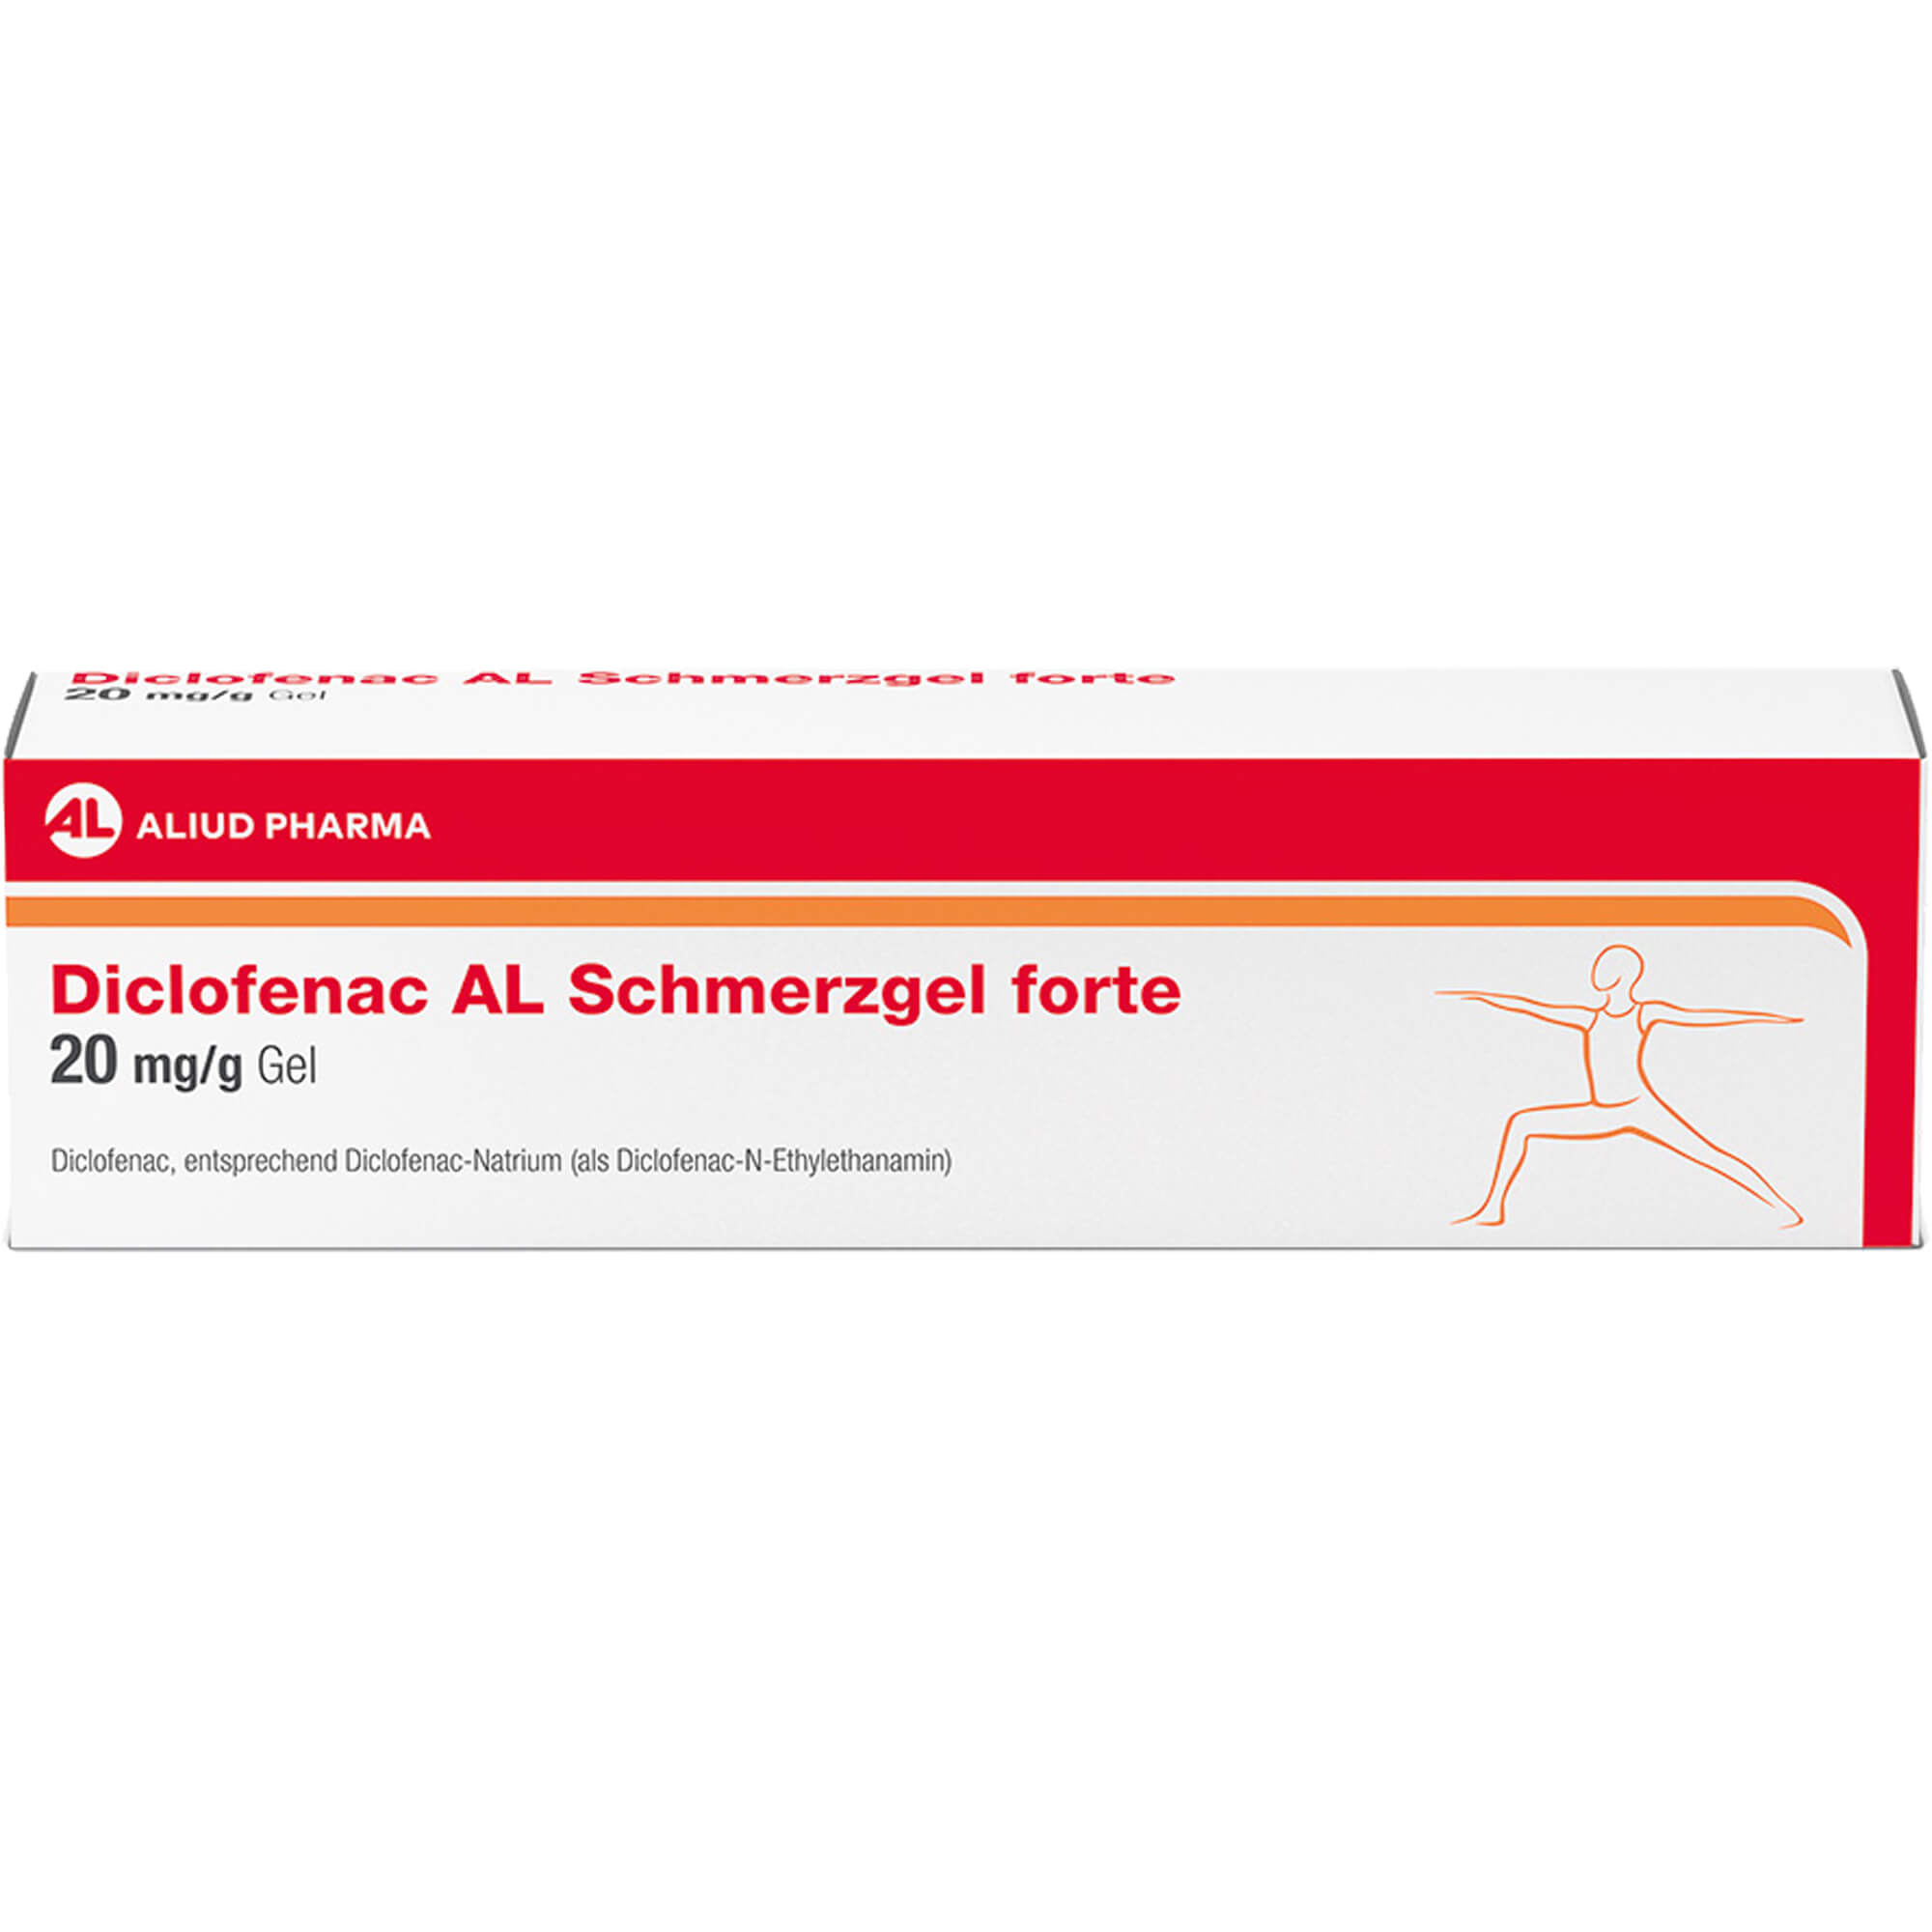 DICLOFENAC AL Schmerzgel forte 20 mg/g